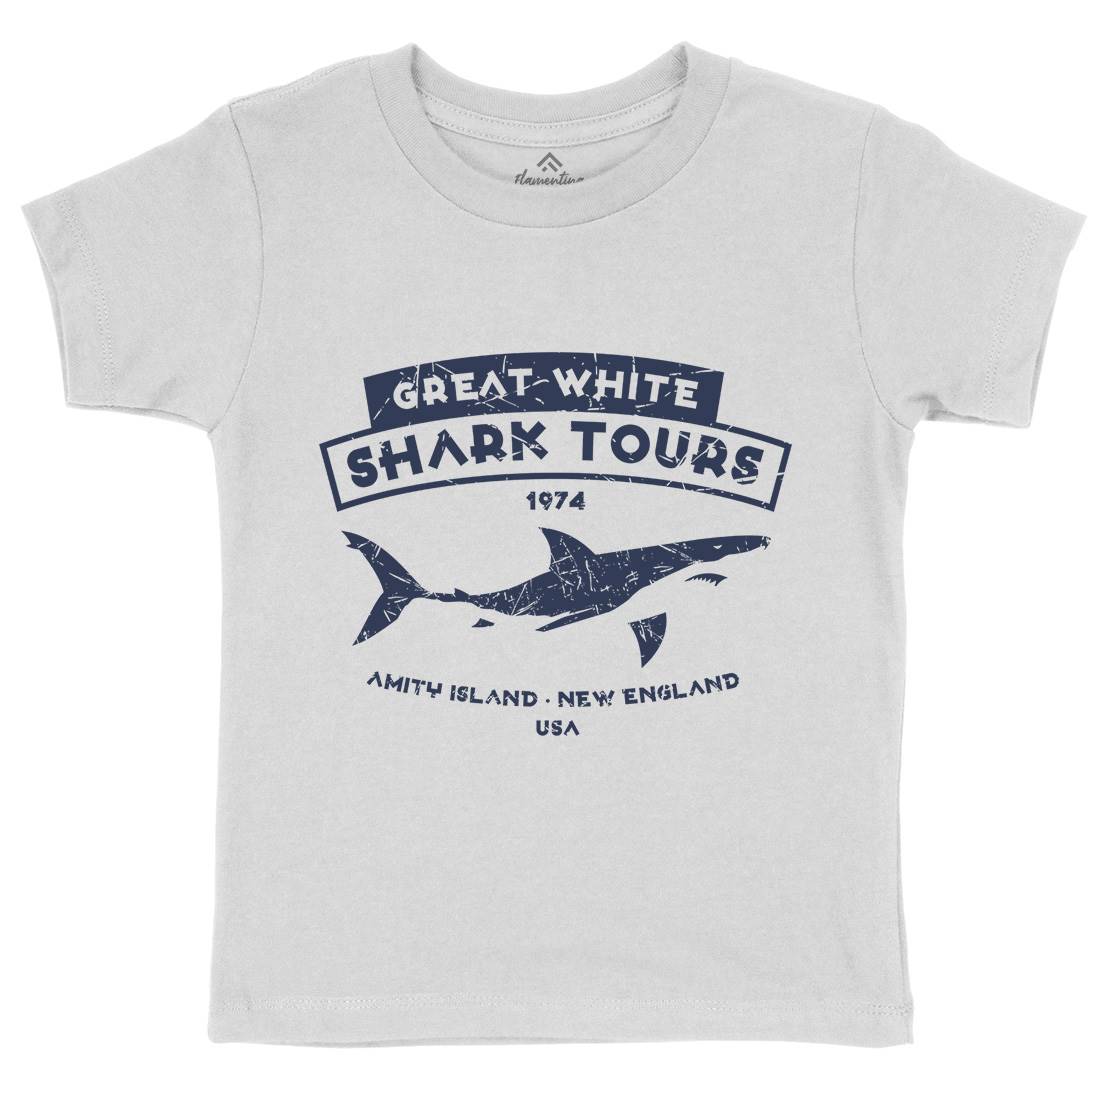 Great White Shark Tours Kids Crew Neck T-Shirt Navy D348